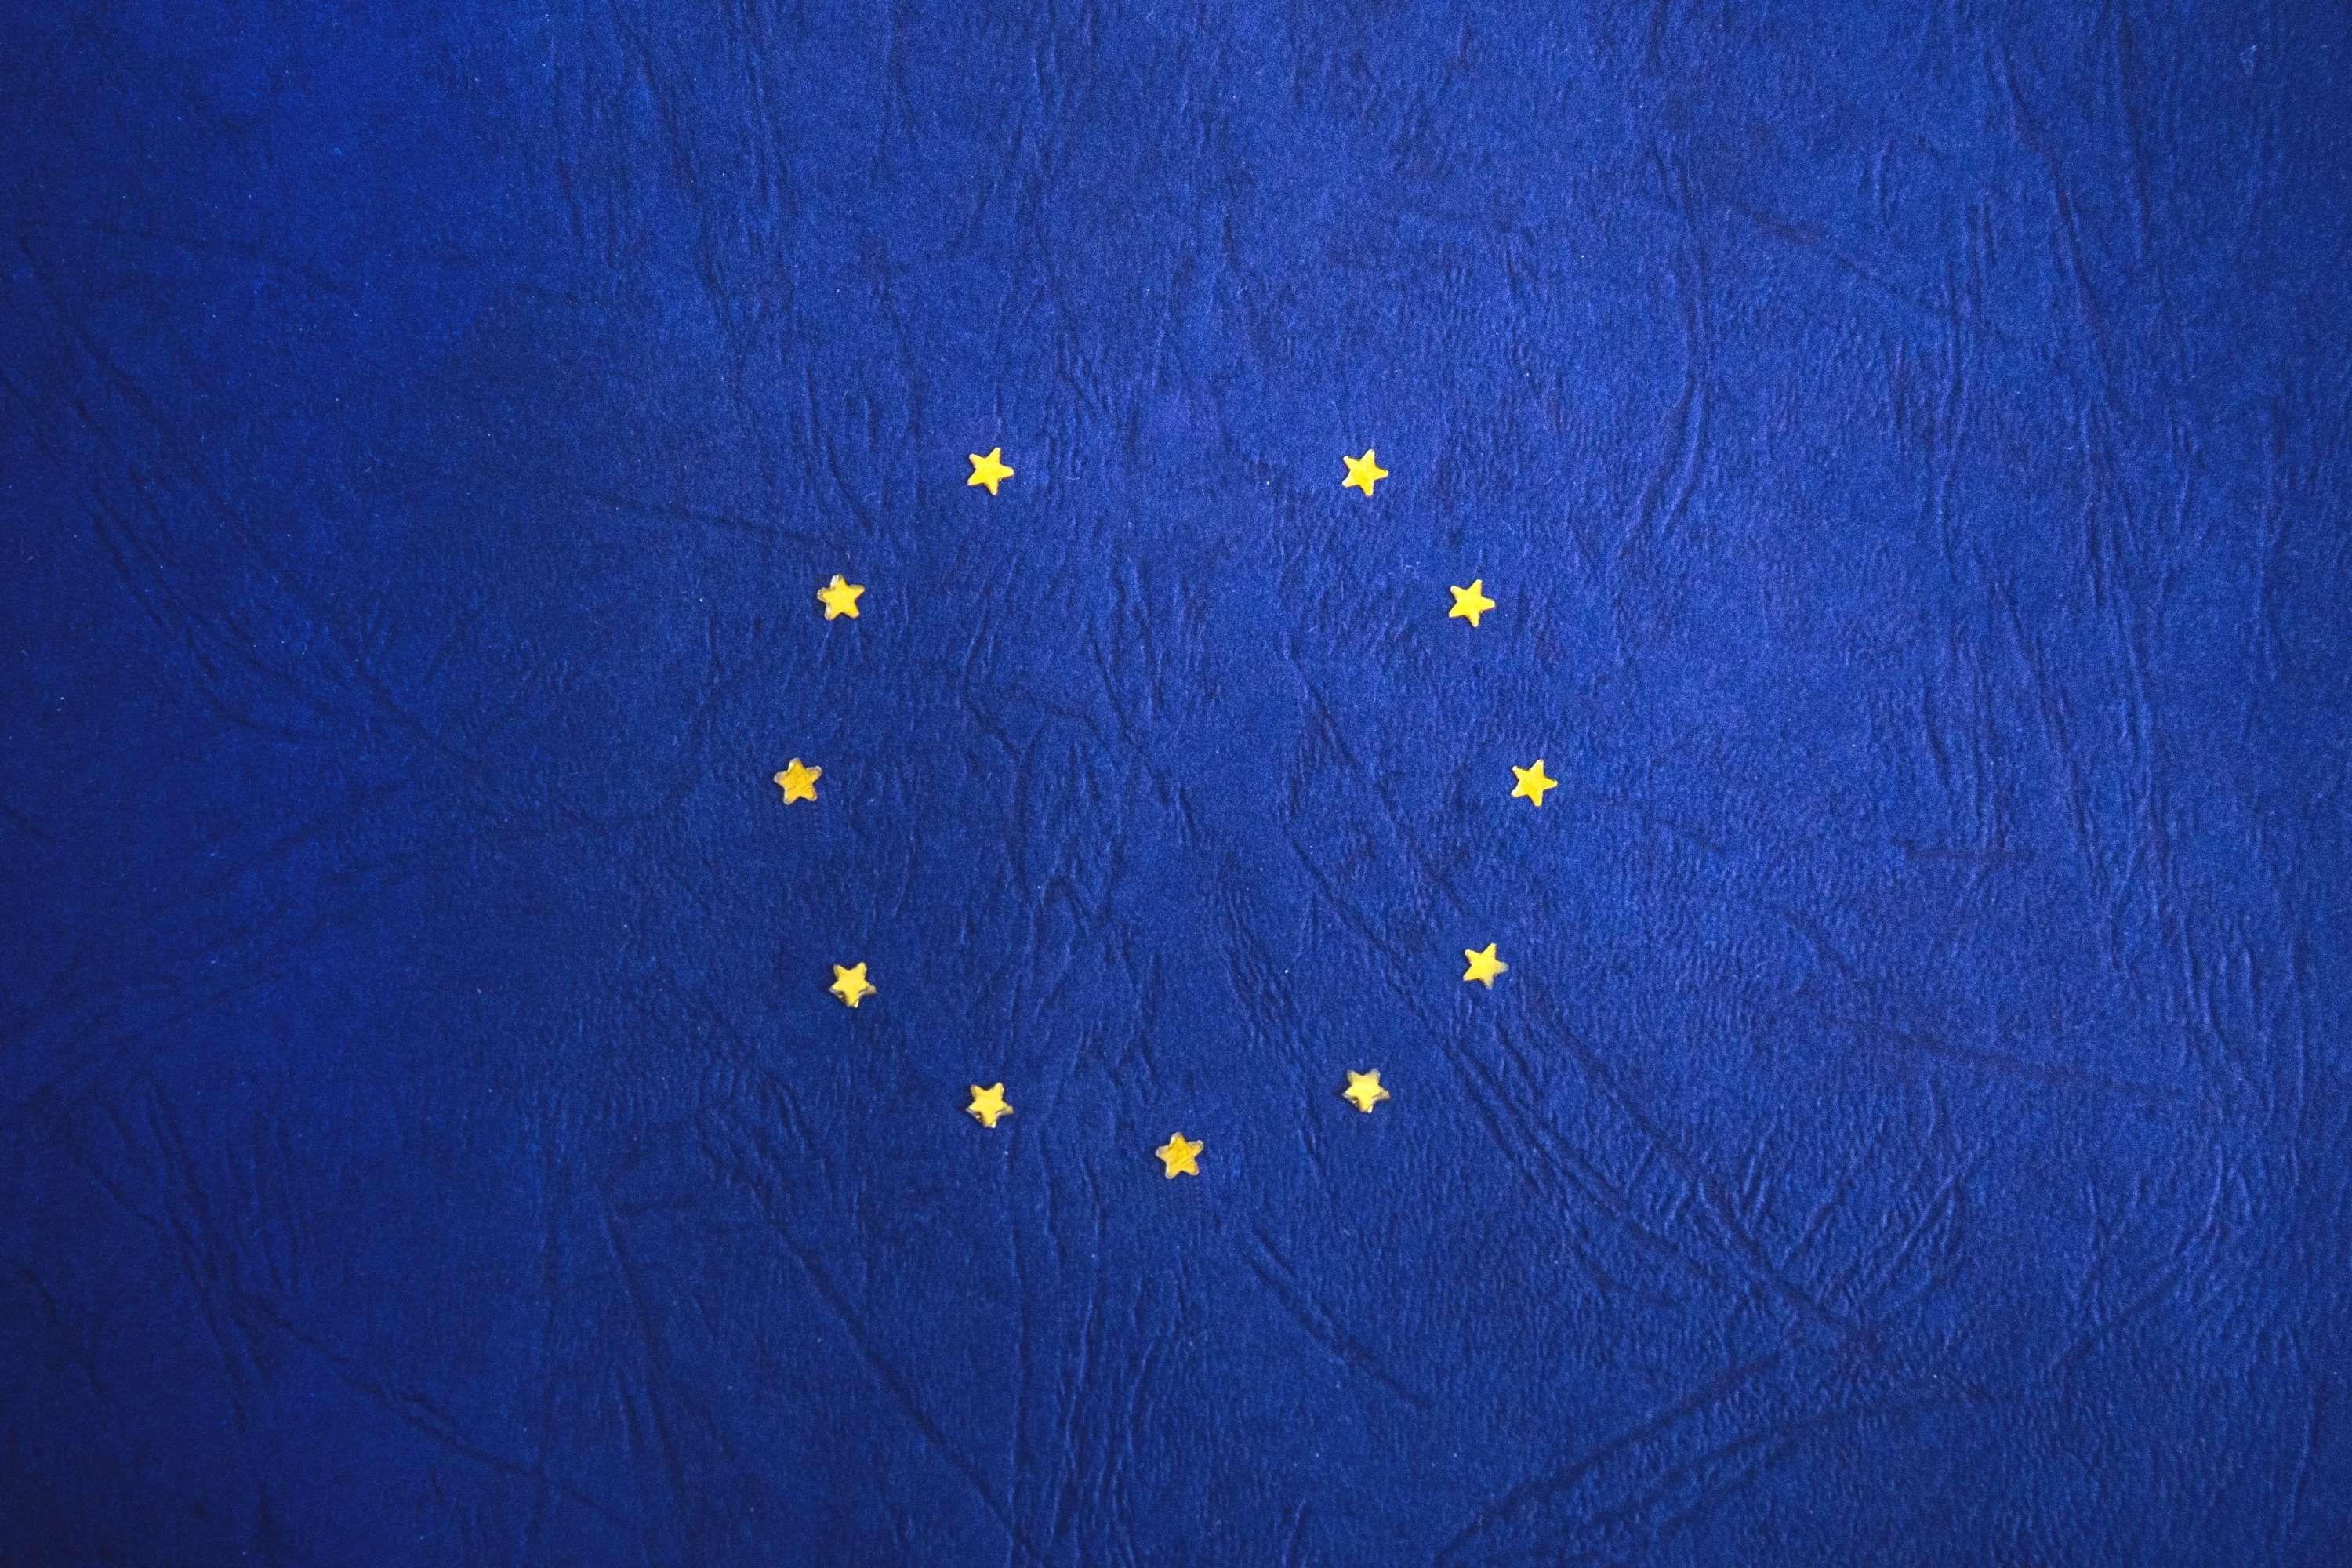 brexit #eu #europe #european flag #european union #flag #stars